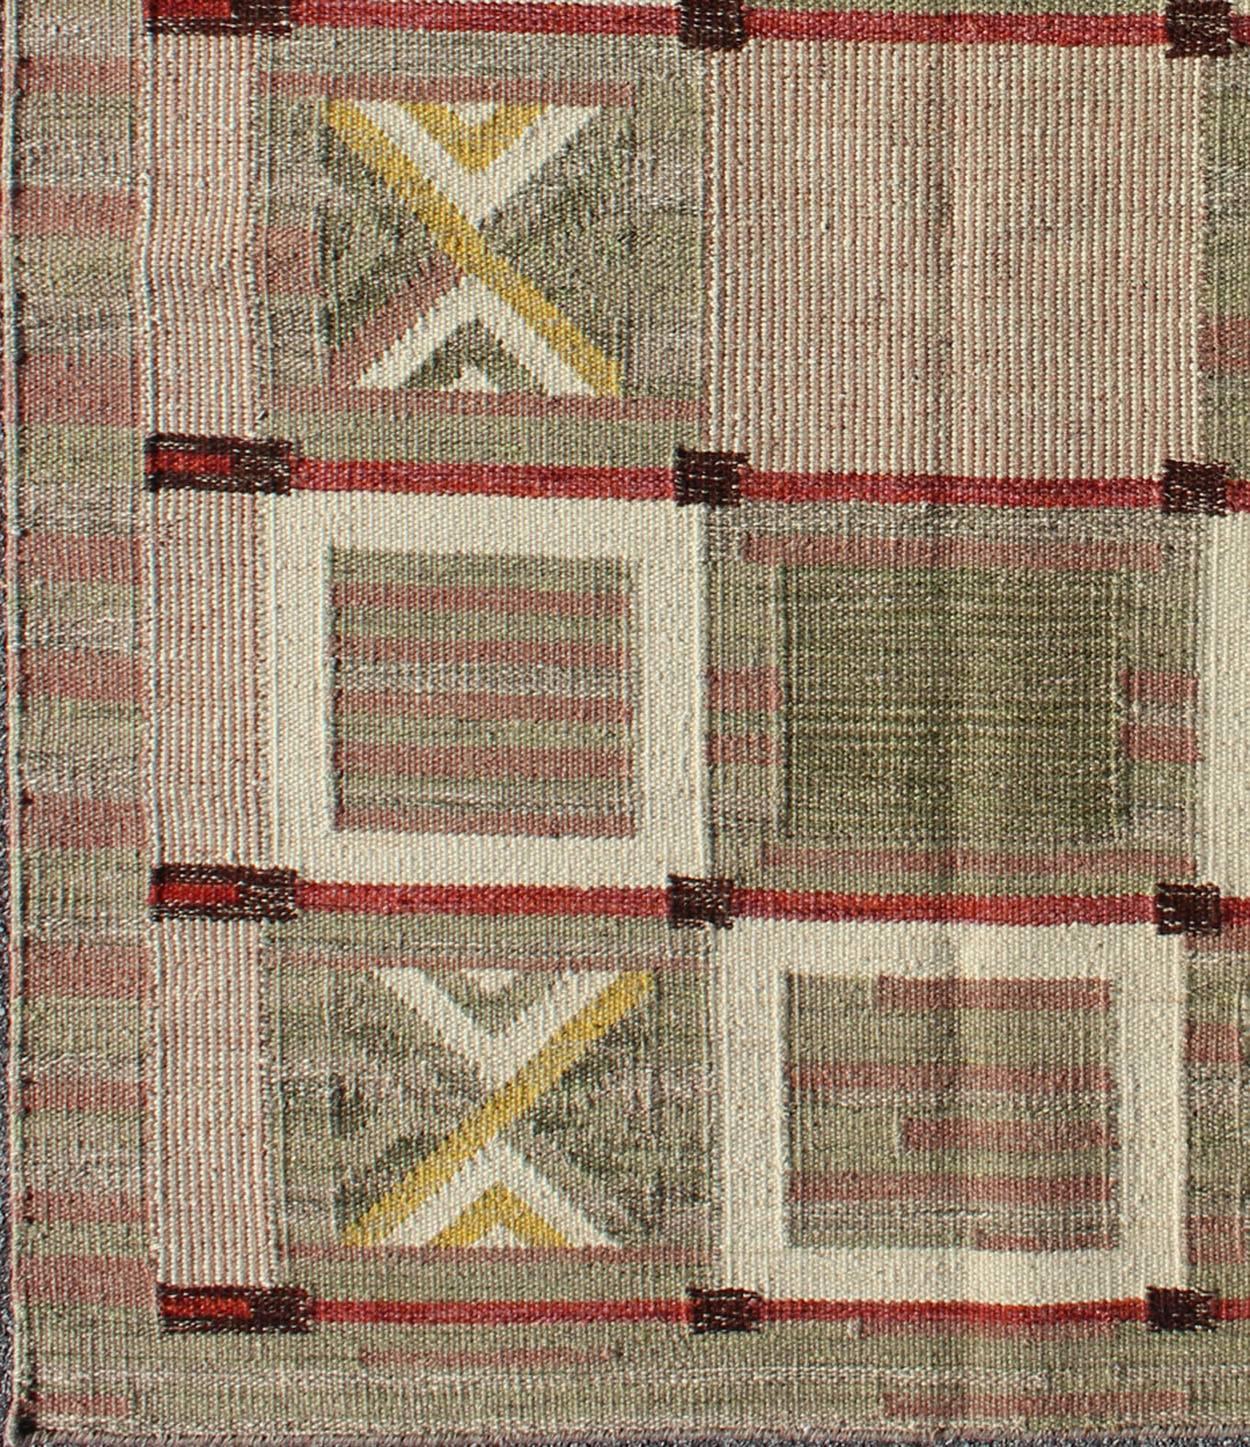 Ce tapis scandinave à motifs à tissage plat s'inspire du travail des designers textiles suédois du début au milieu du XXe siècle. Avec un mélange unique de design historique et moderne, dans des tons de vert, de mauve clair, de rouge, de marron et